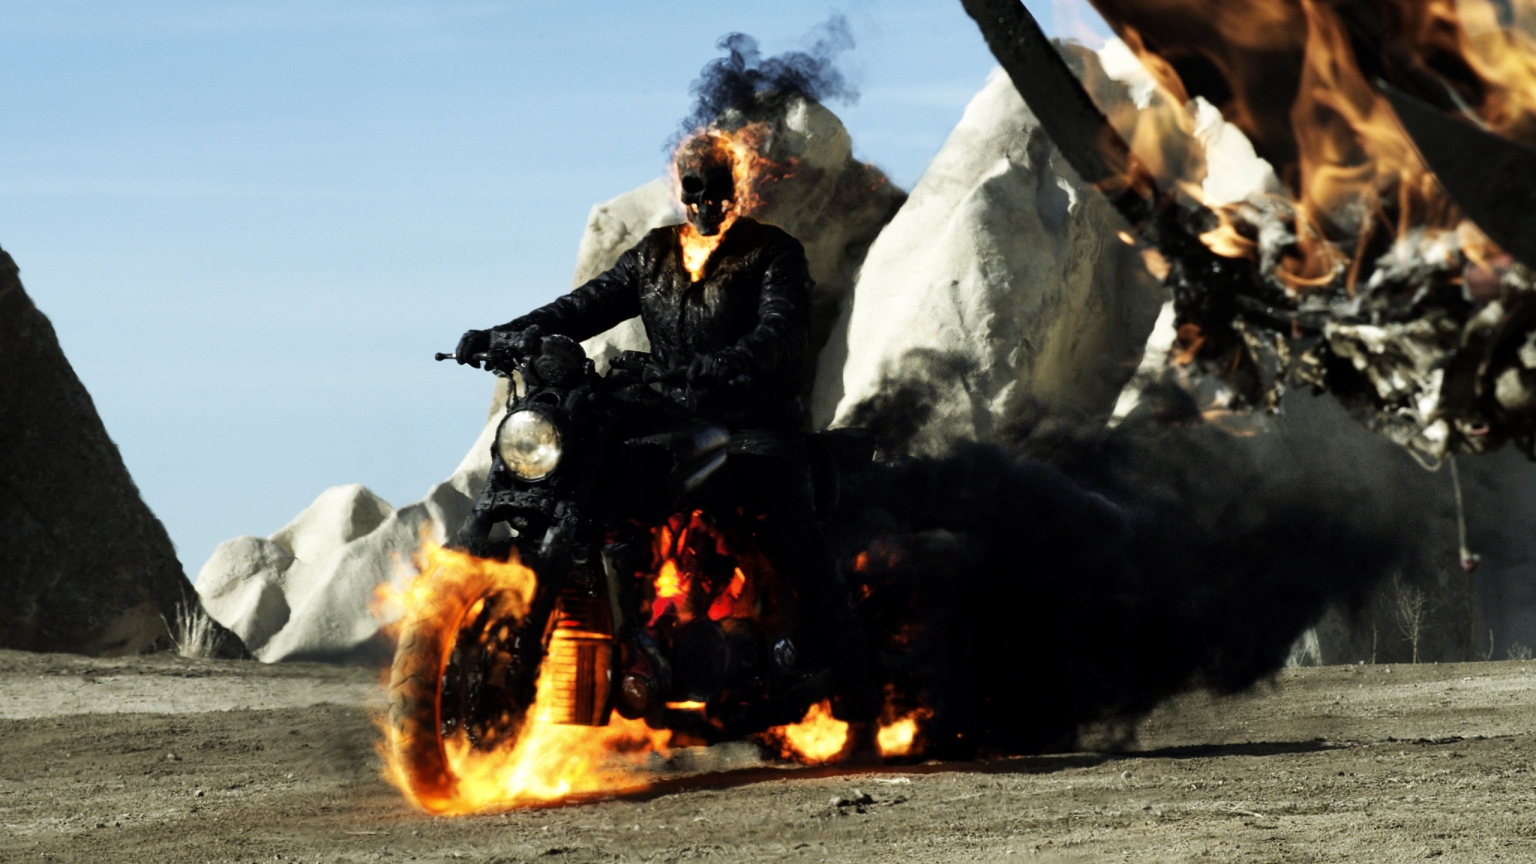 Ghost Rider Spirit of Vengeance 2012 for 1536 x 864 HDTV resolution